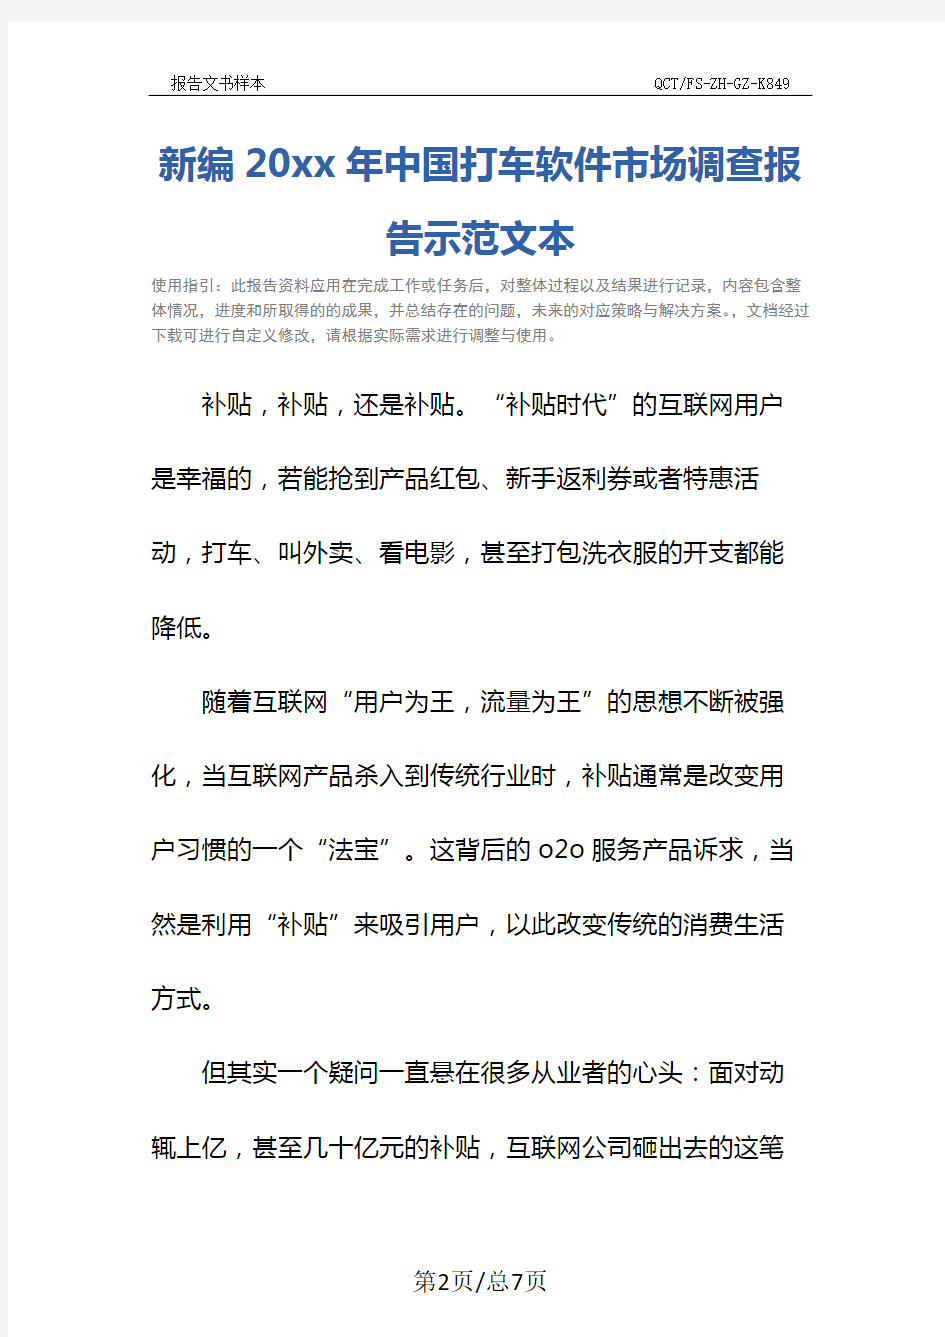 新编20xx年中国打车软件市场调查报告示范文本